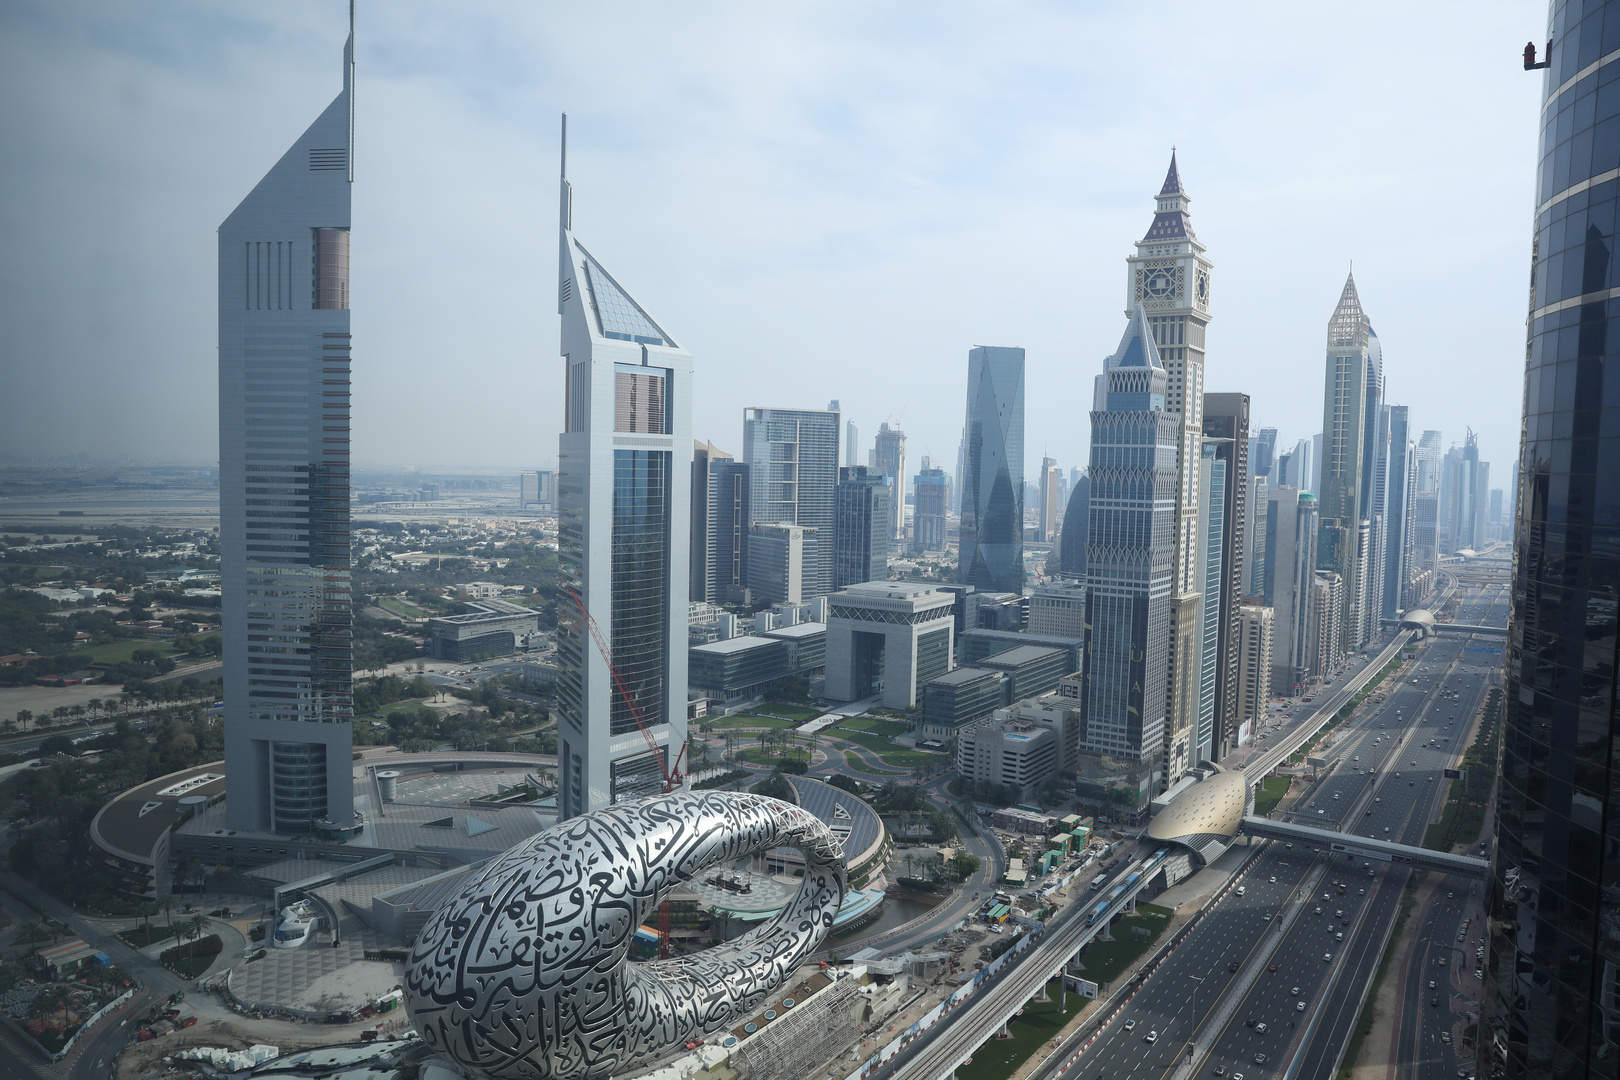 الإمارات ترحب برفع اسمها من قائمة المراقبة الأمريكية الخاصة بحماية الملكية الفكرية